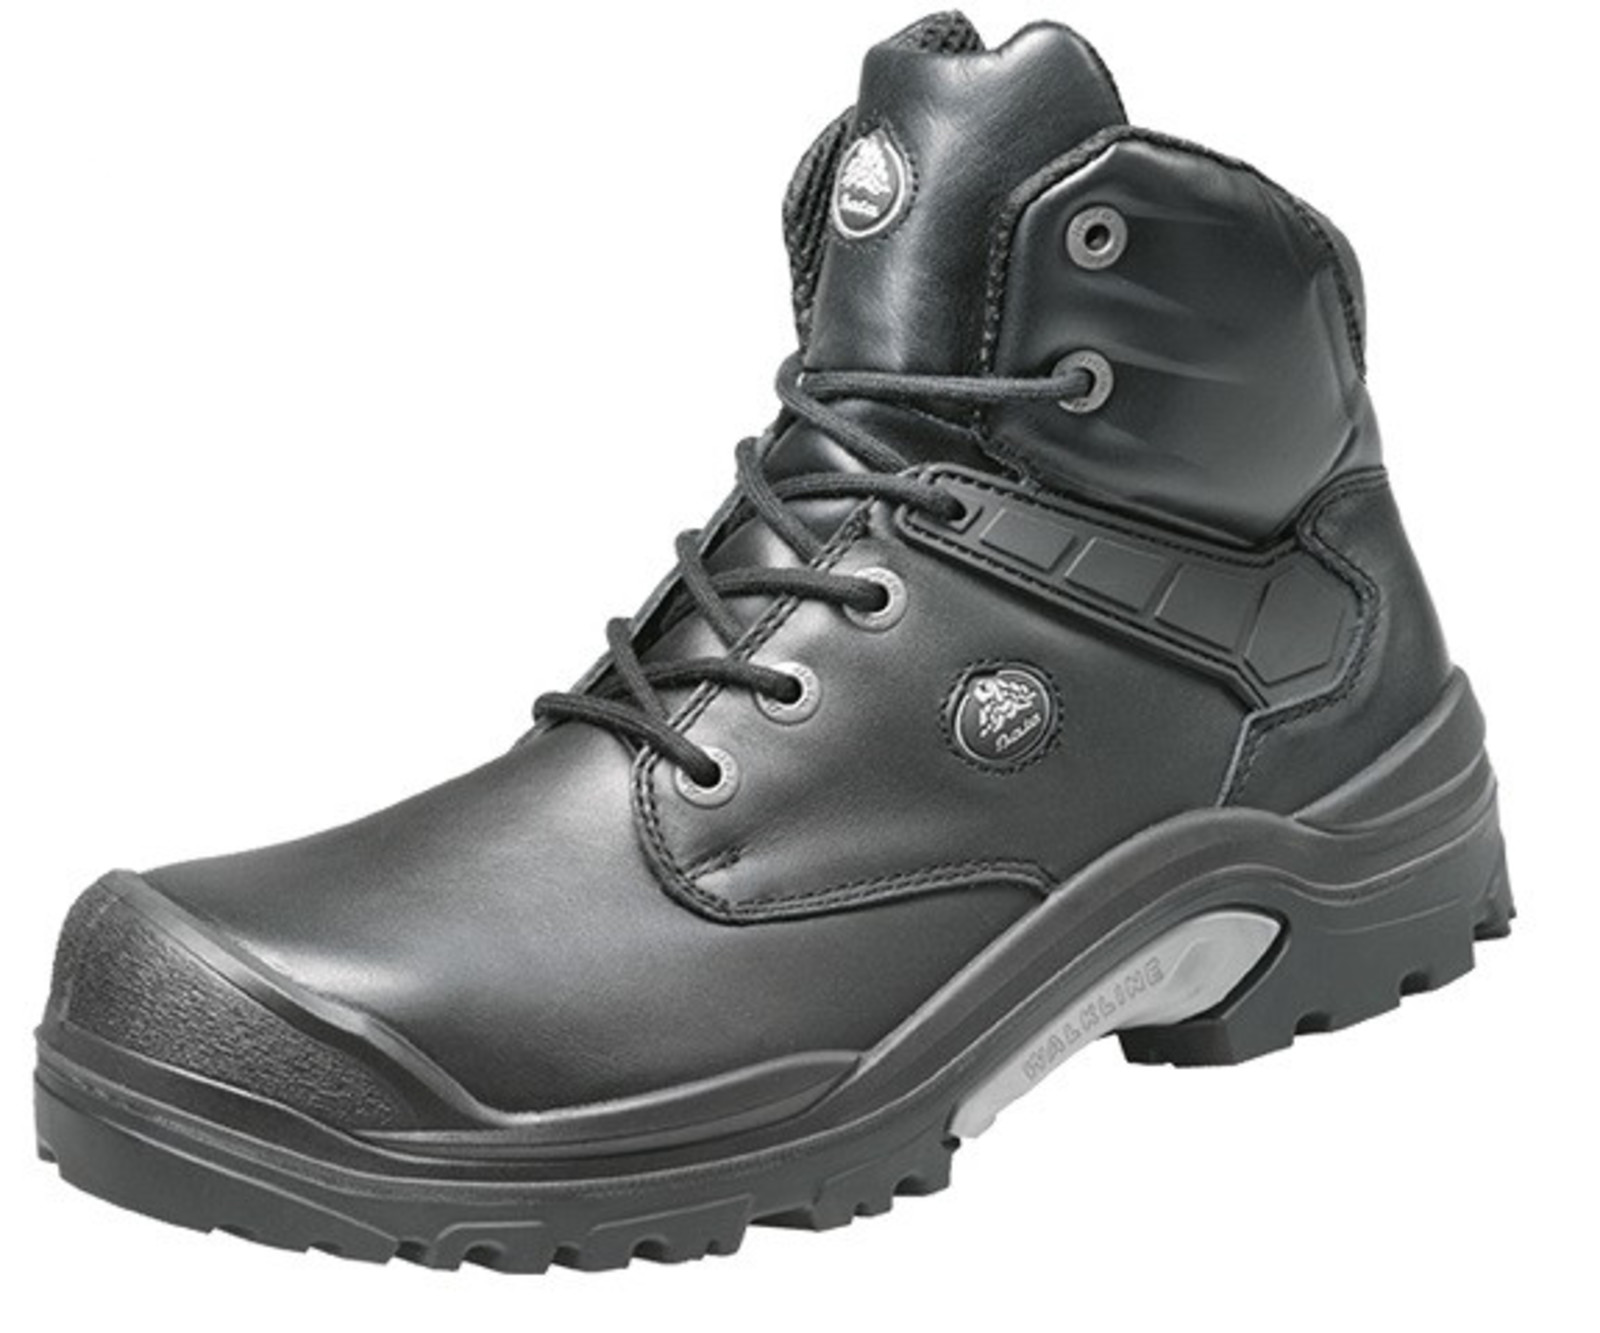 Bezpečnostná obuv Baťa PWR S3 - veľkosť: 38, farba: čierna